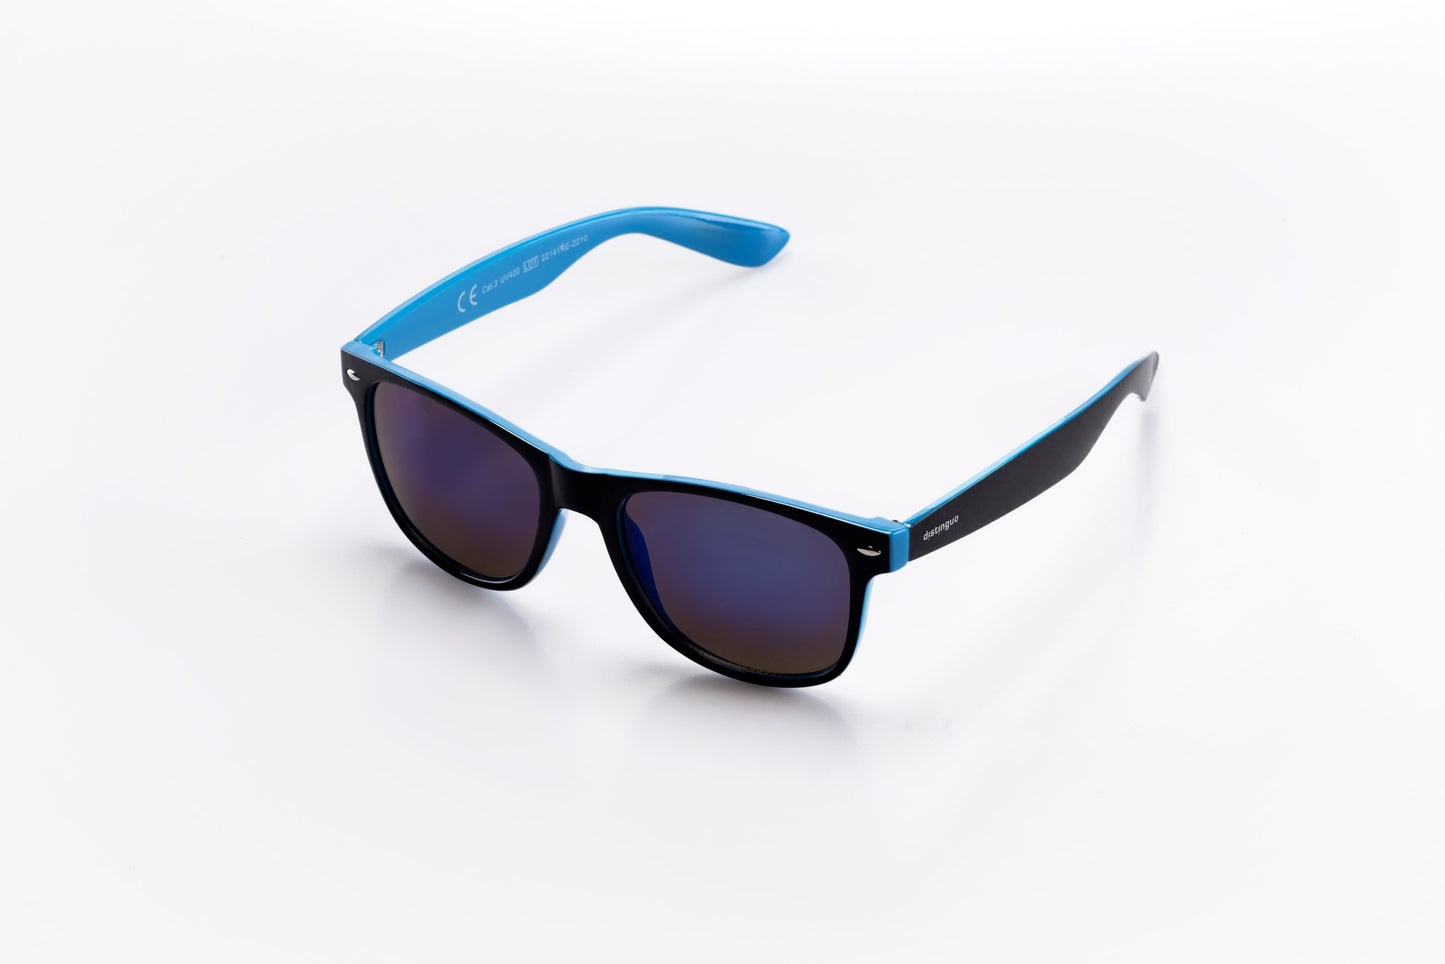 Occhiali da sole Distinguo 502.1 modello Sportivo, montatura in policarbonato nero-blu con lenti blu effetto specchio.